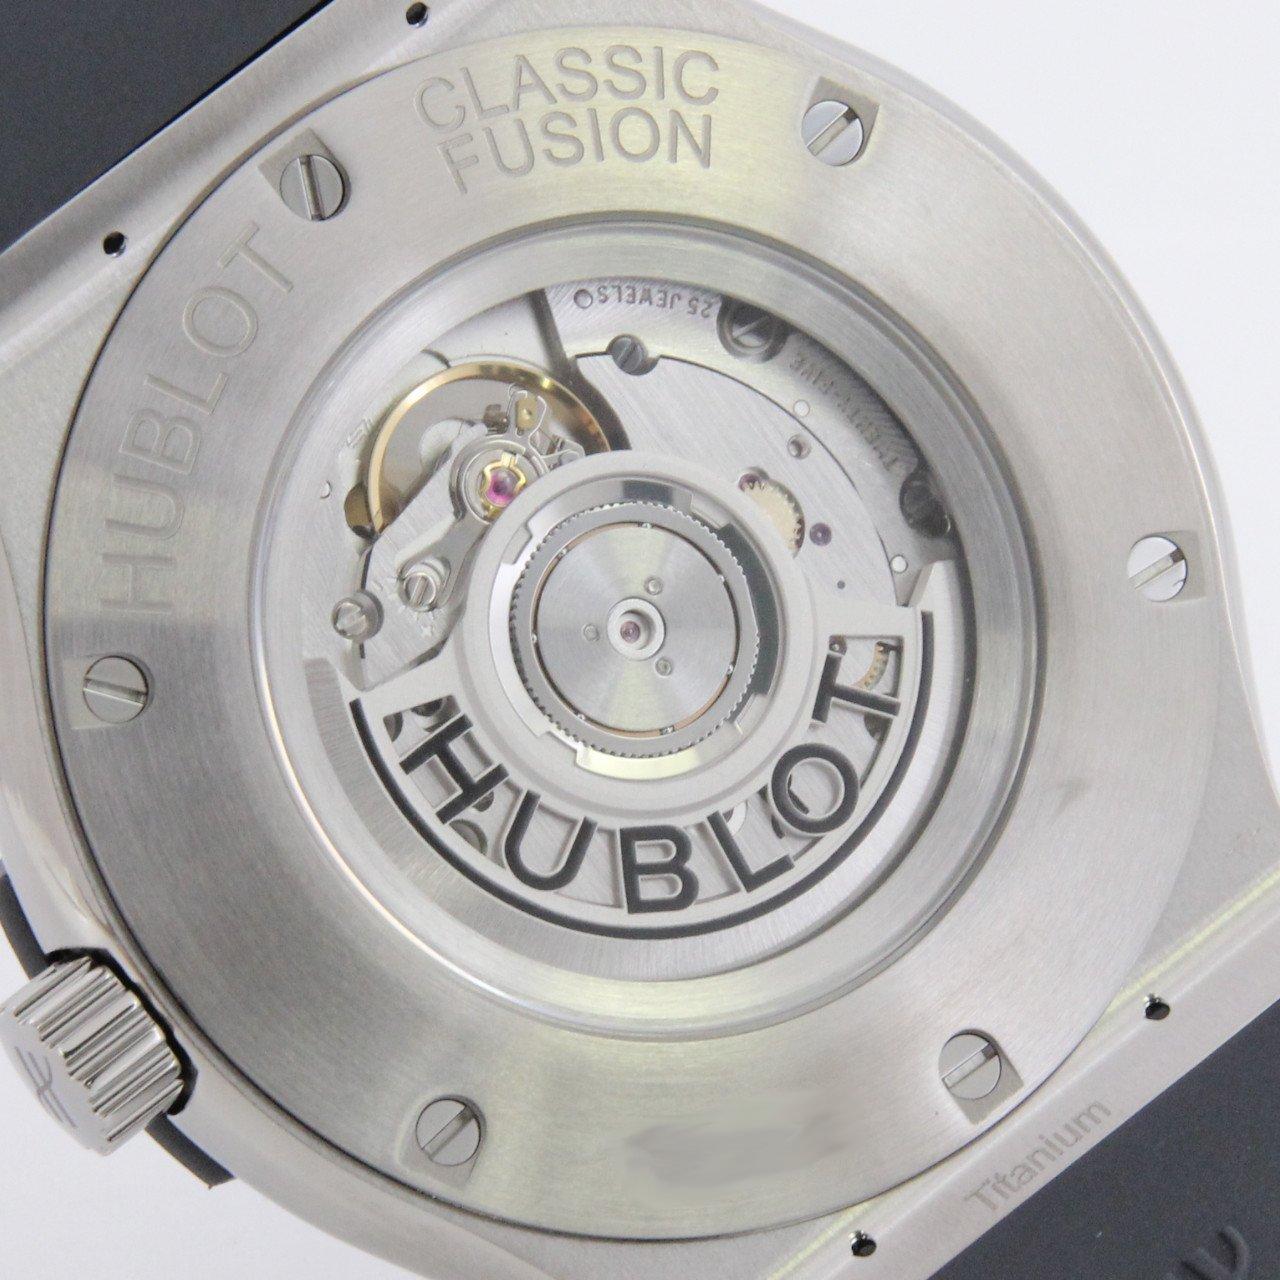 Hublot Classic Fusion 511.NX.7071.RX in Titanium